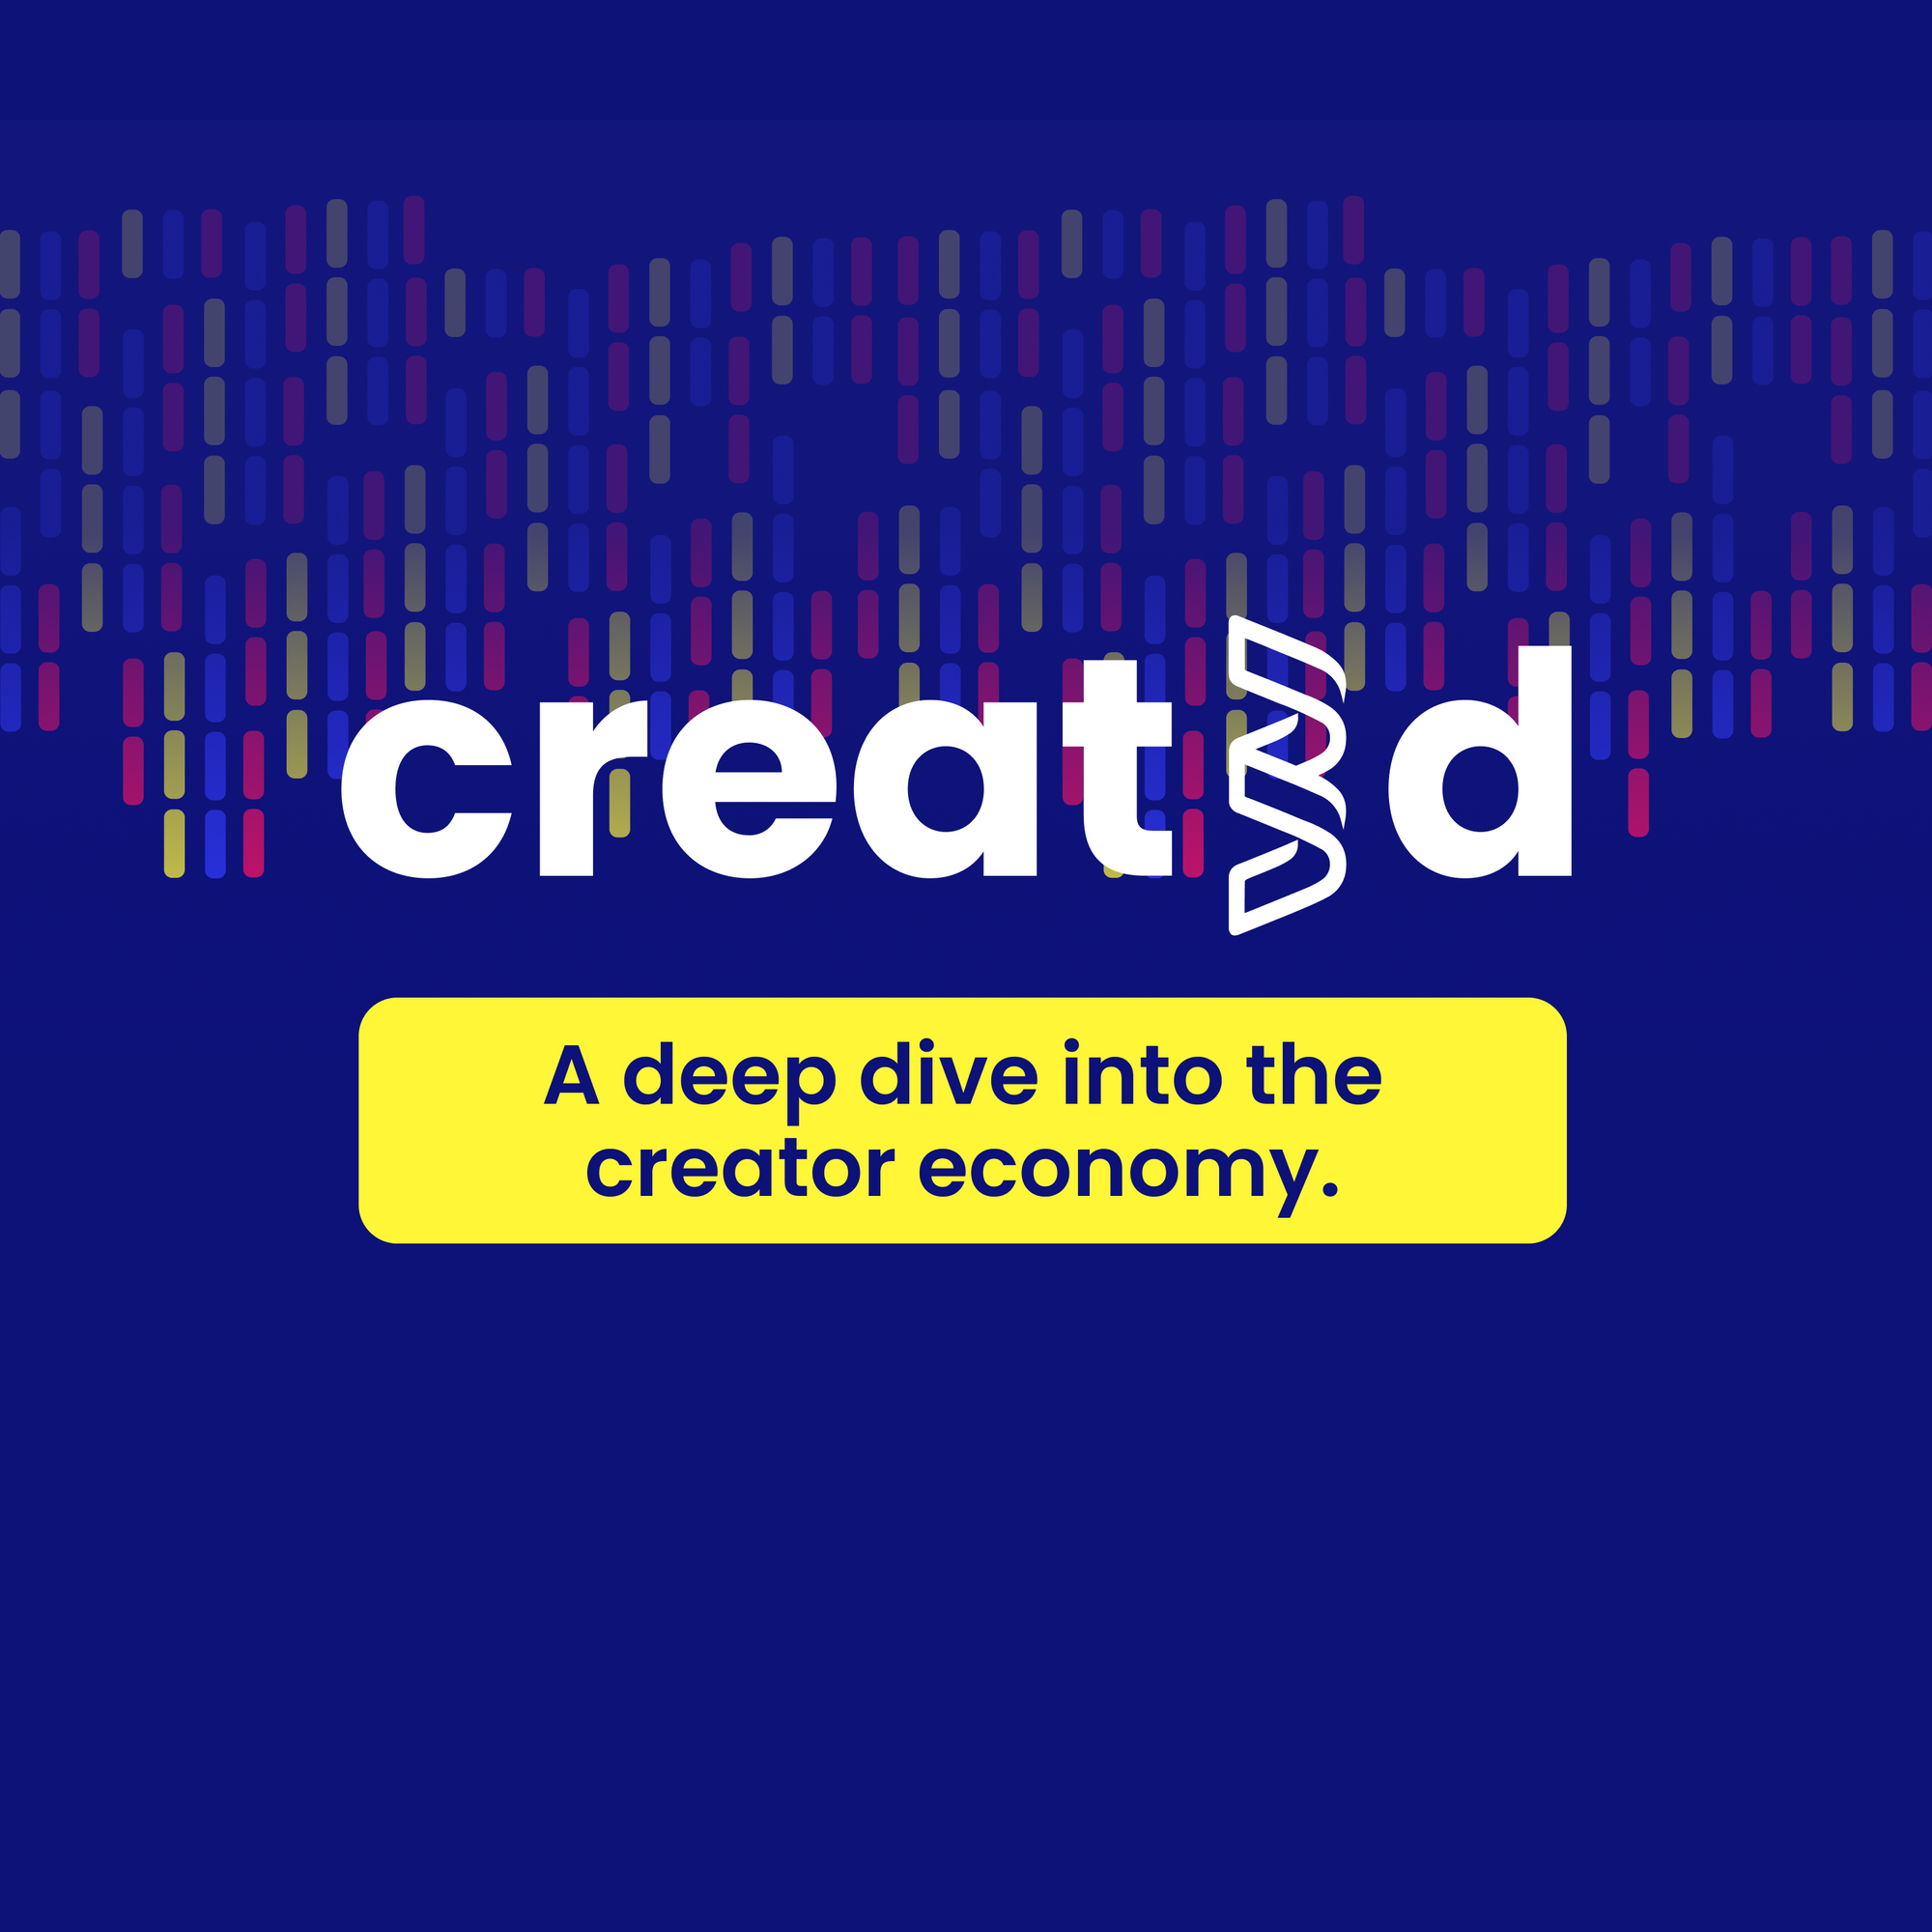 The Created Economy